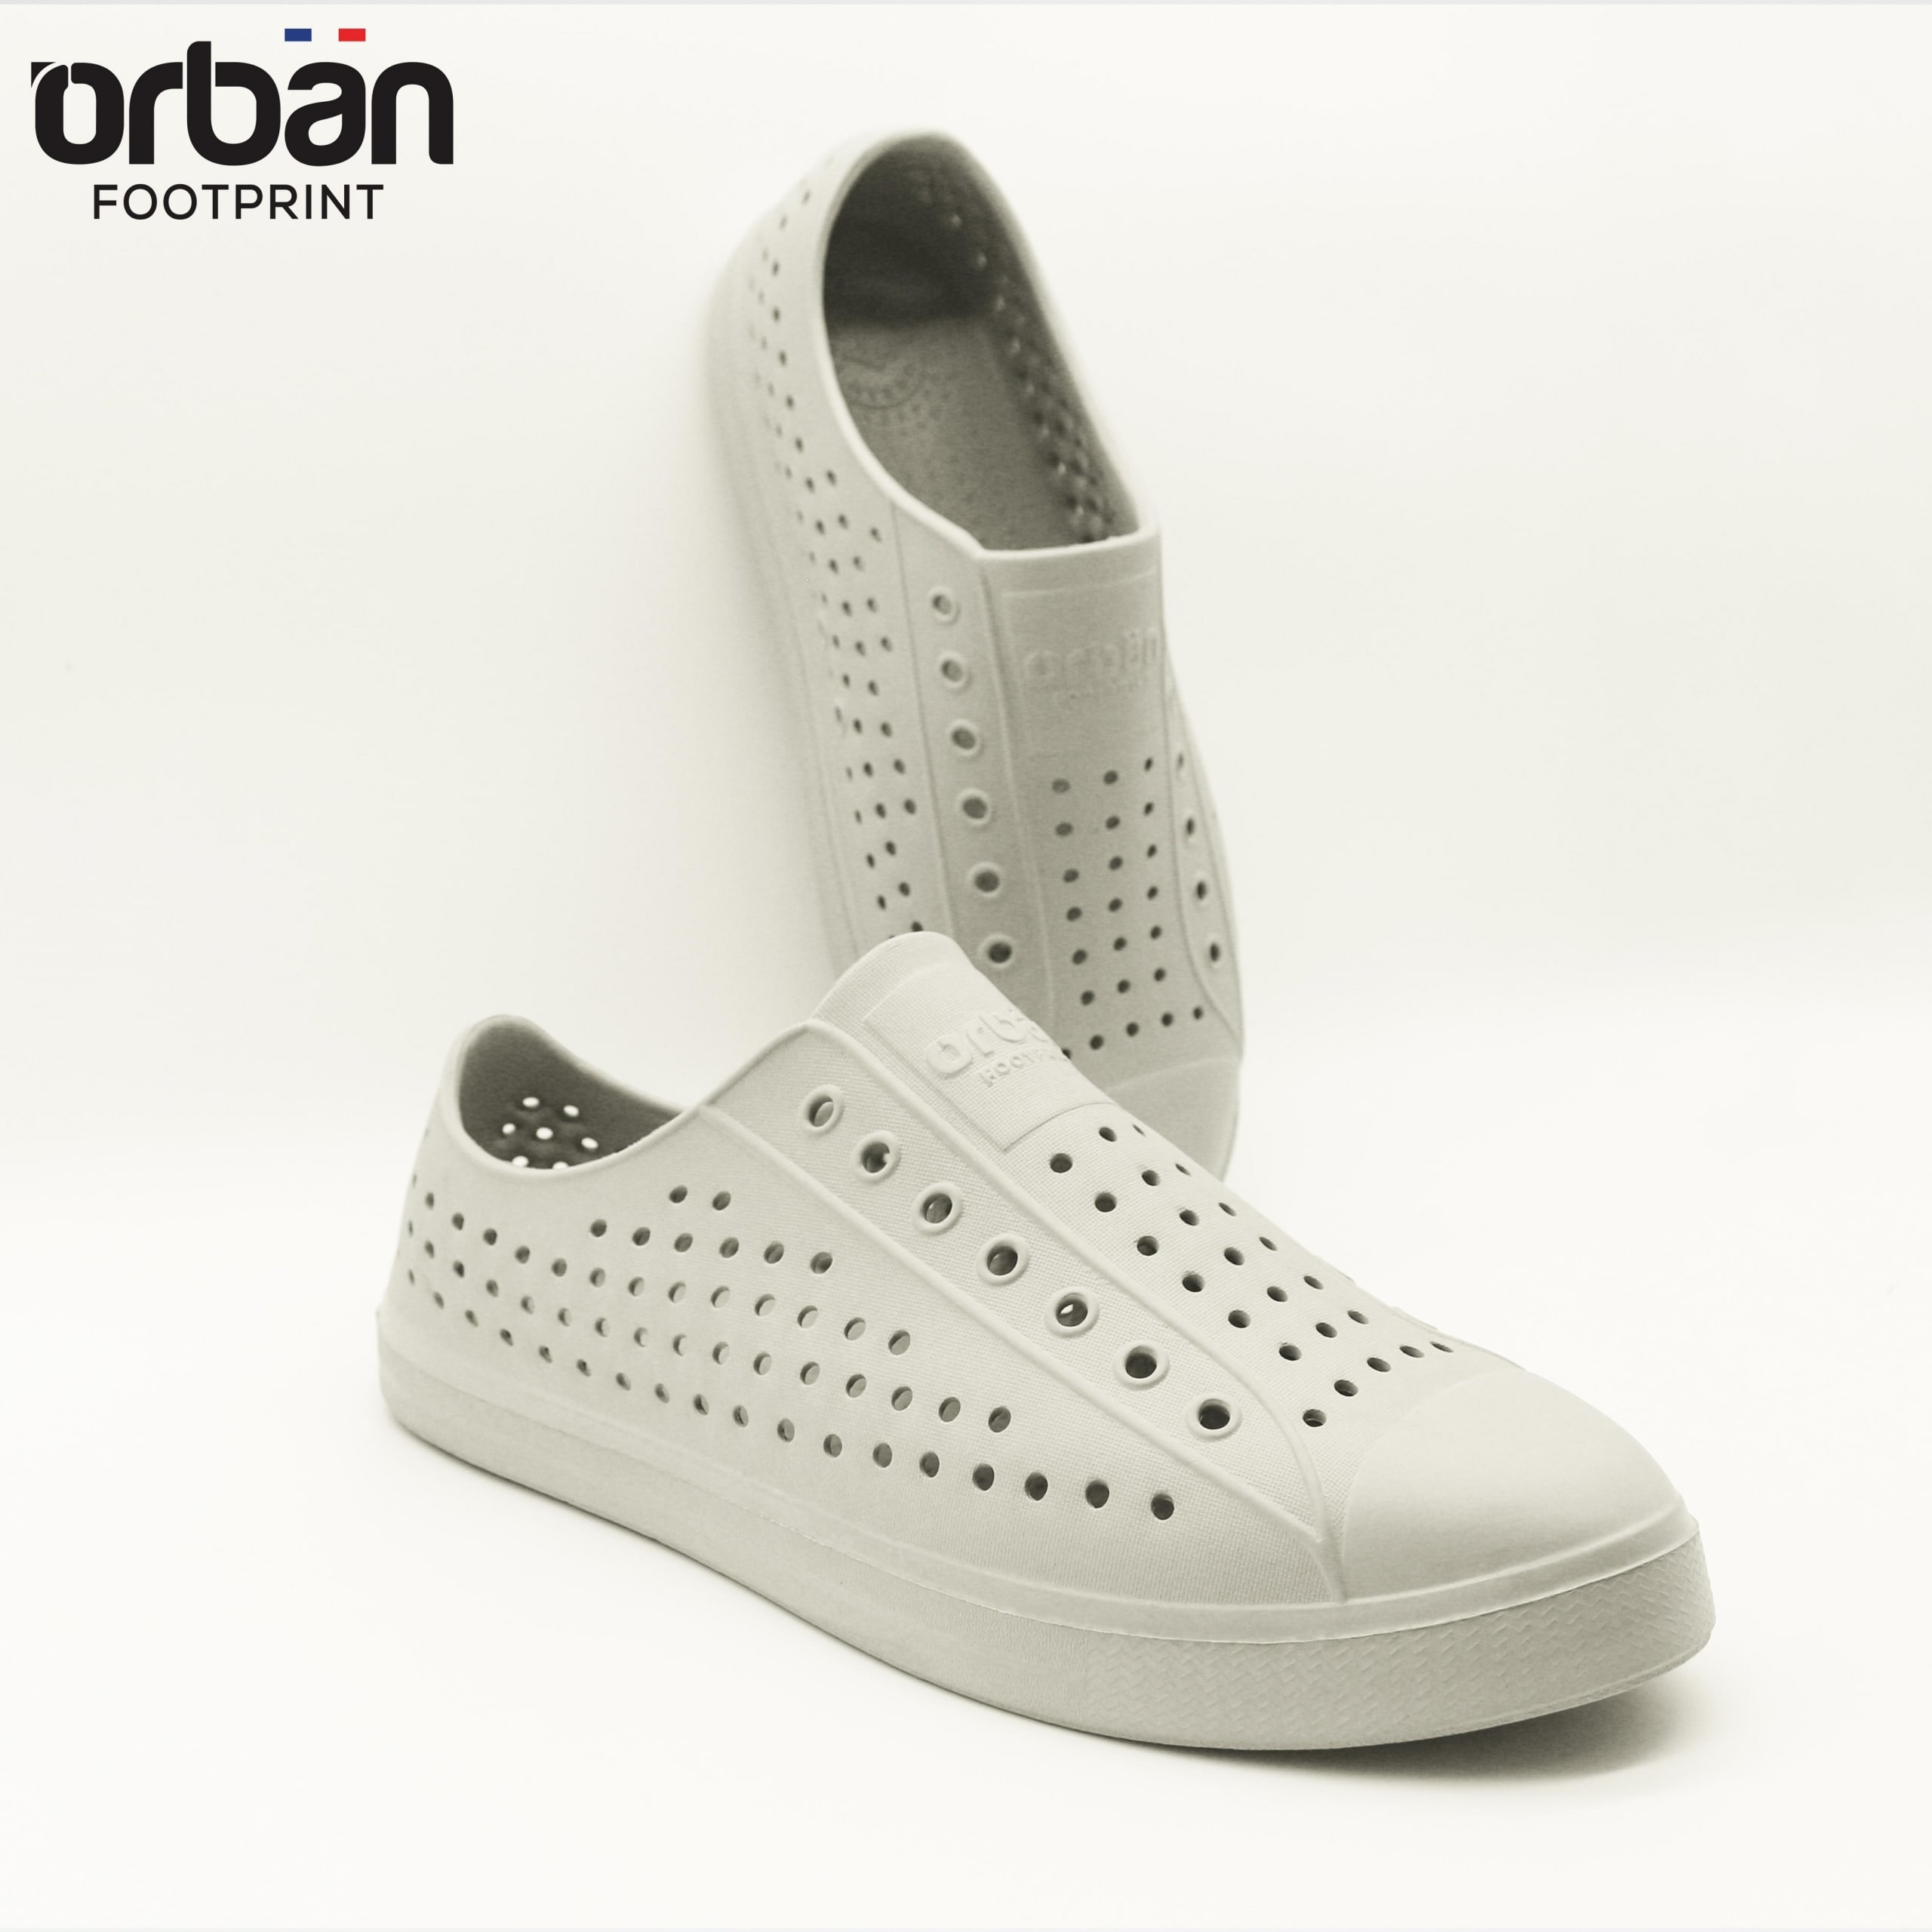 [Urban] Giày nhựa lỗ nam nữ đi mưa đi biển Urban - Chất liệu Eva siêu nhẹ, chống nước, giá tốt - Màu Ghi trơn